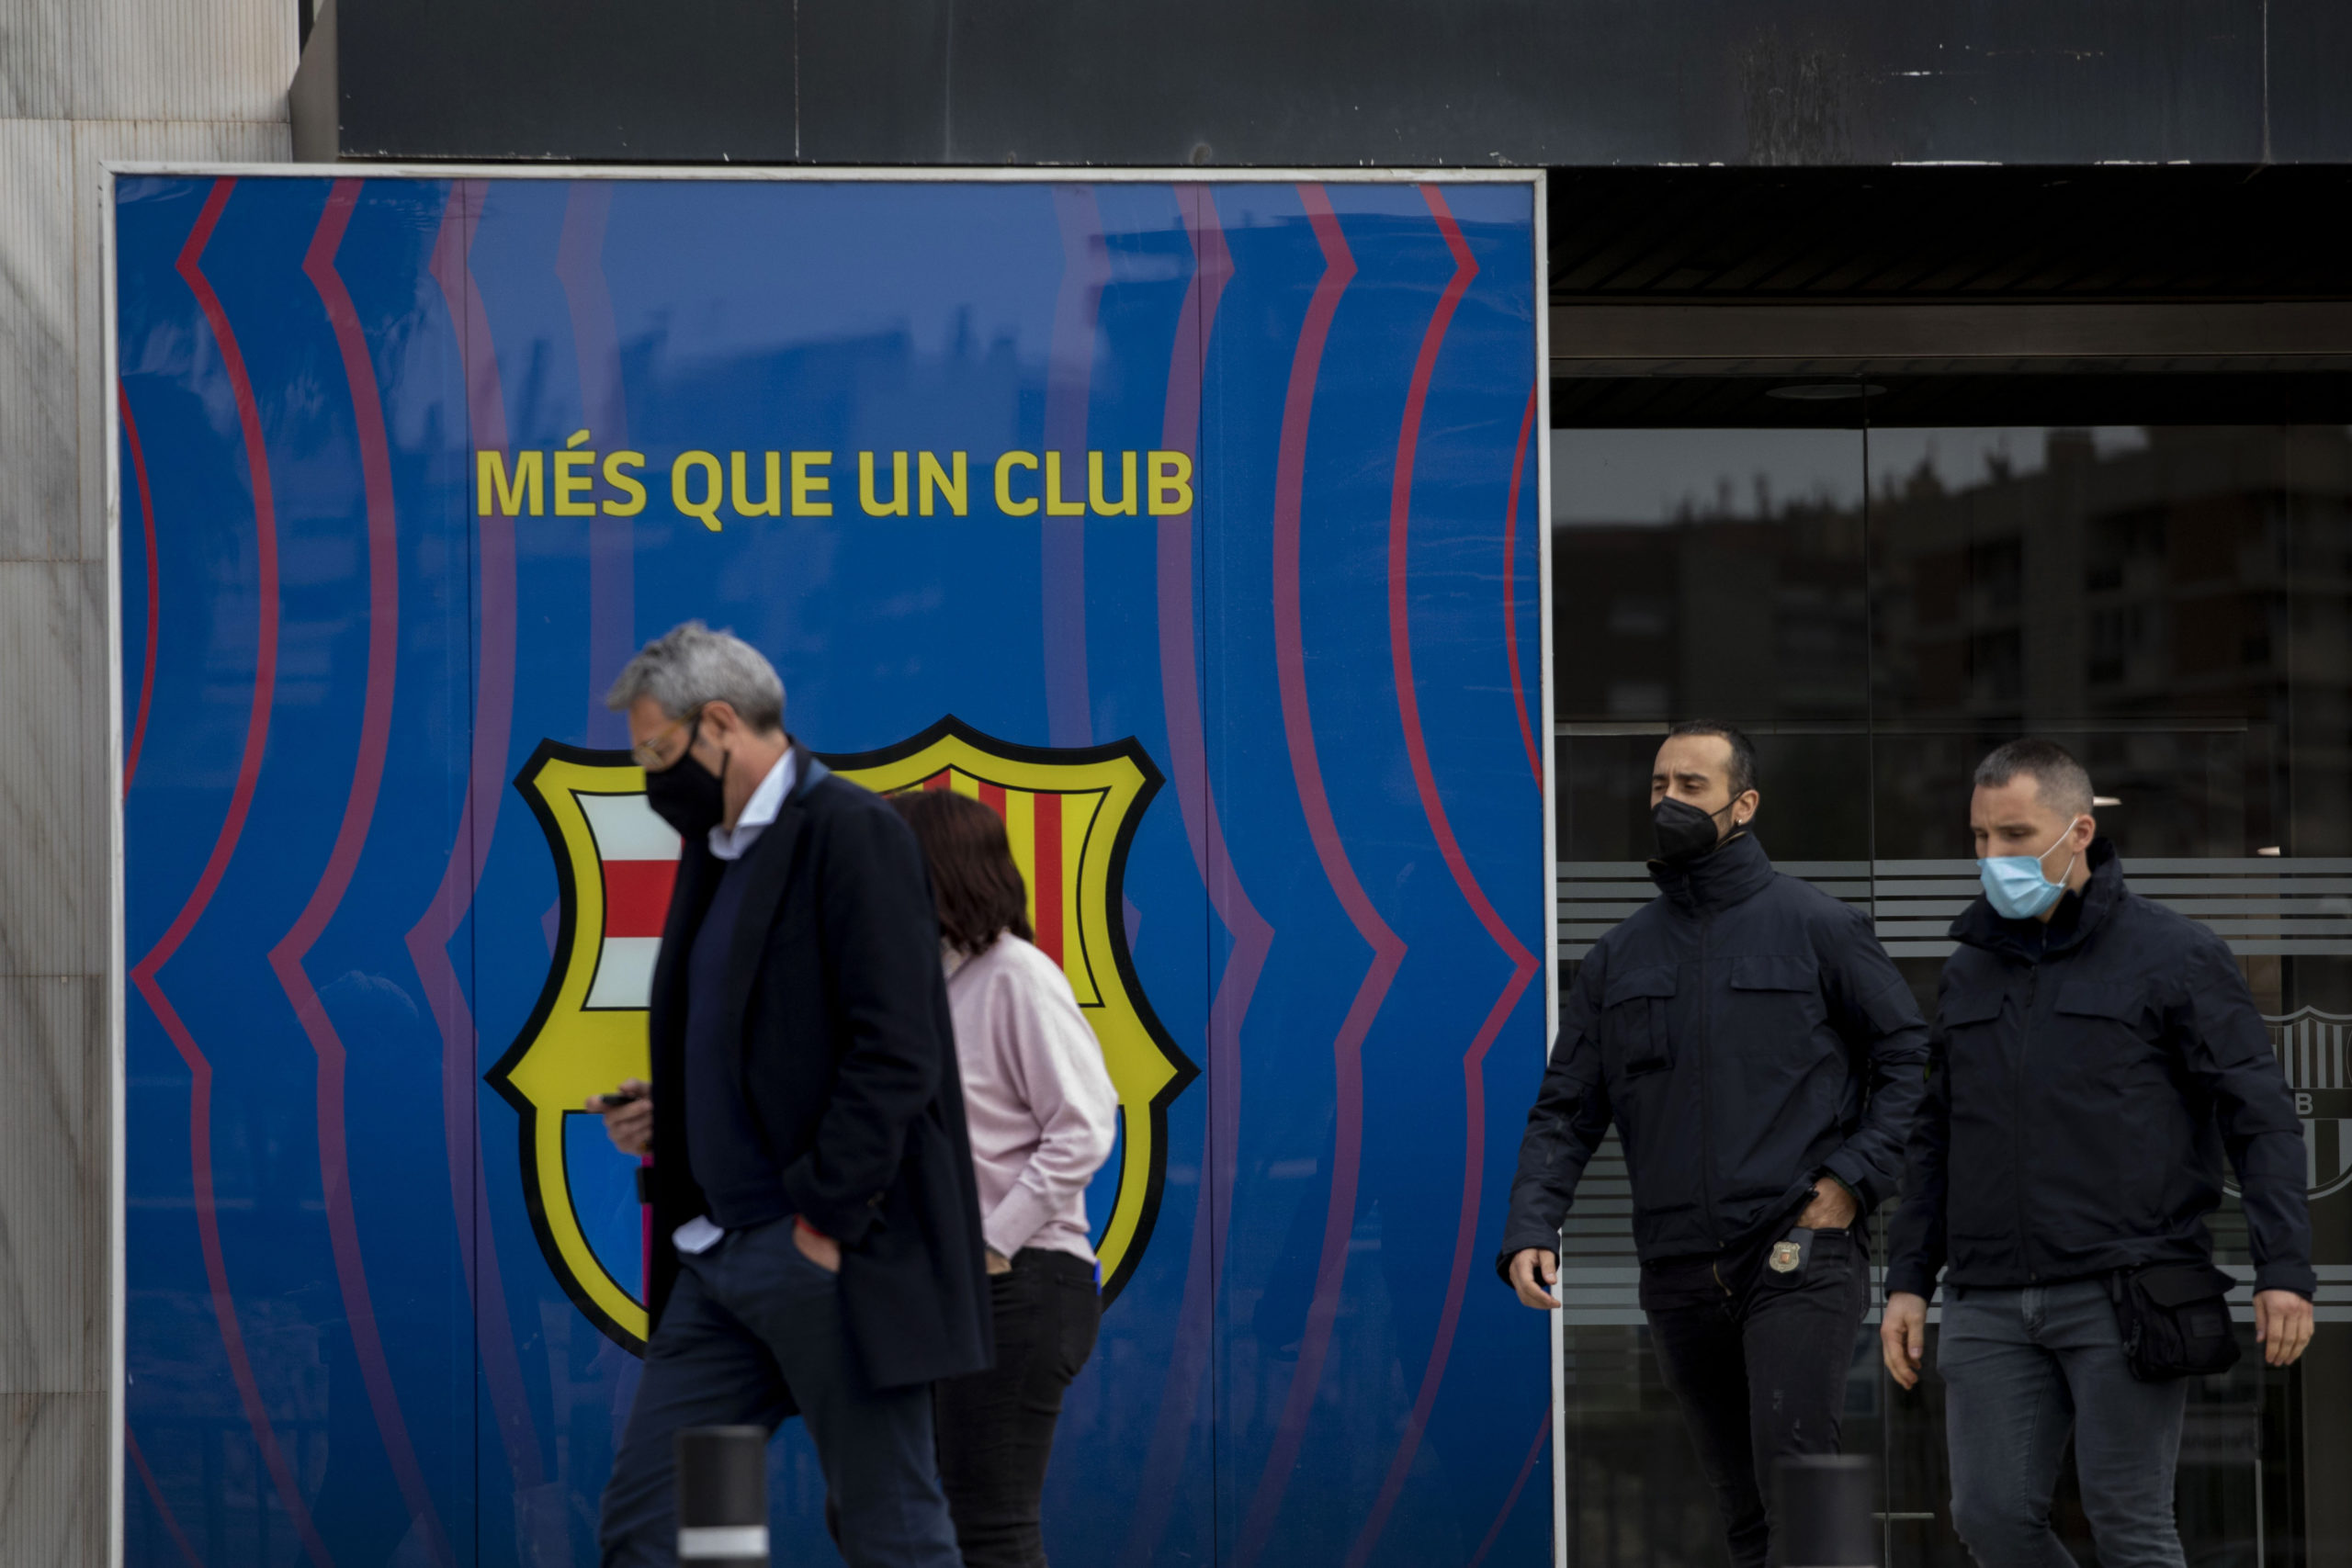 Španielska prokuratúra obvinila FC Barcelona z korupcie, podvodu a falšovania dokumentov